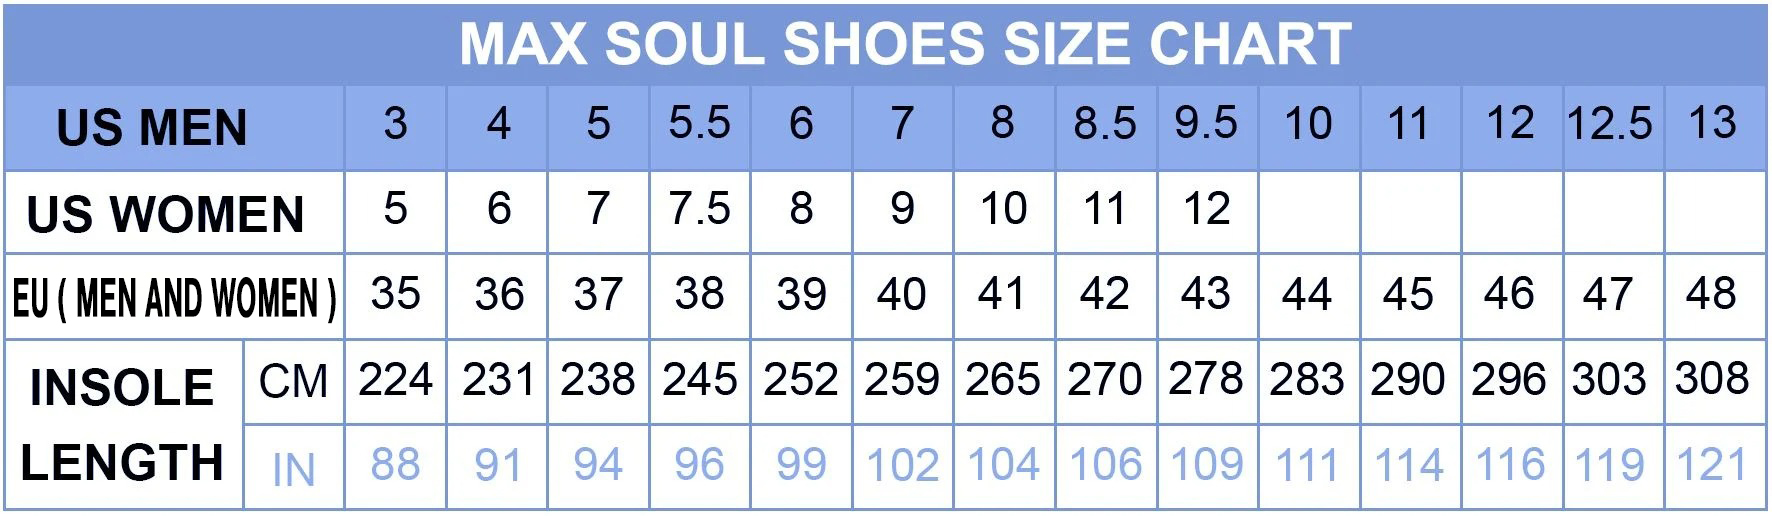 DeWalt clunky max soul shoes 1